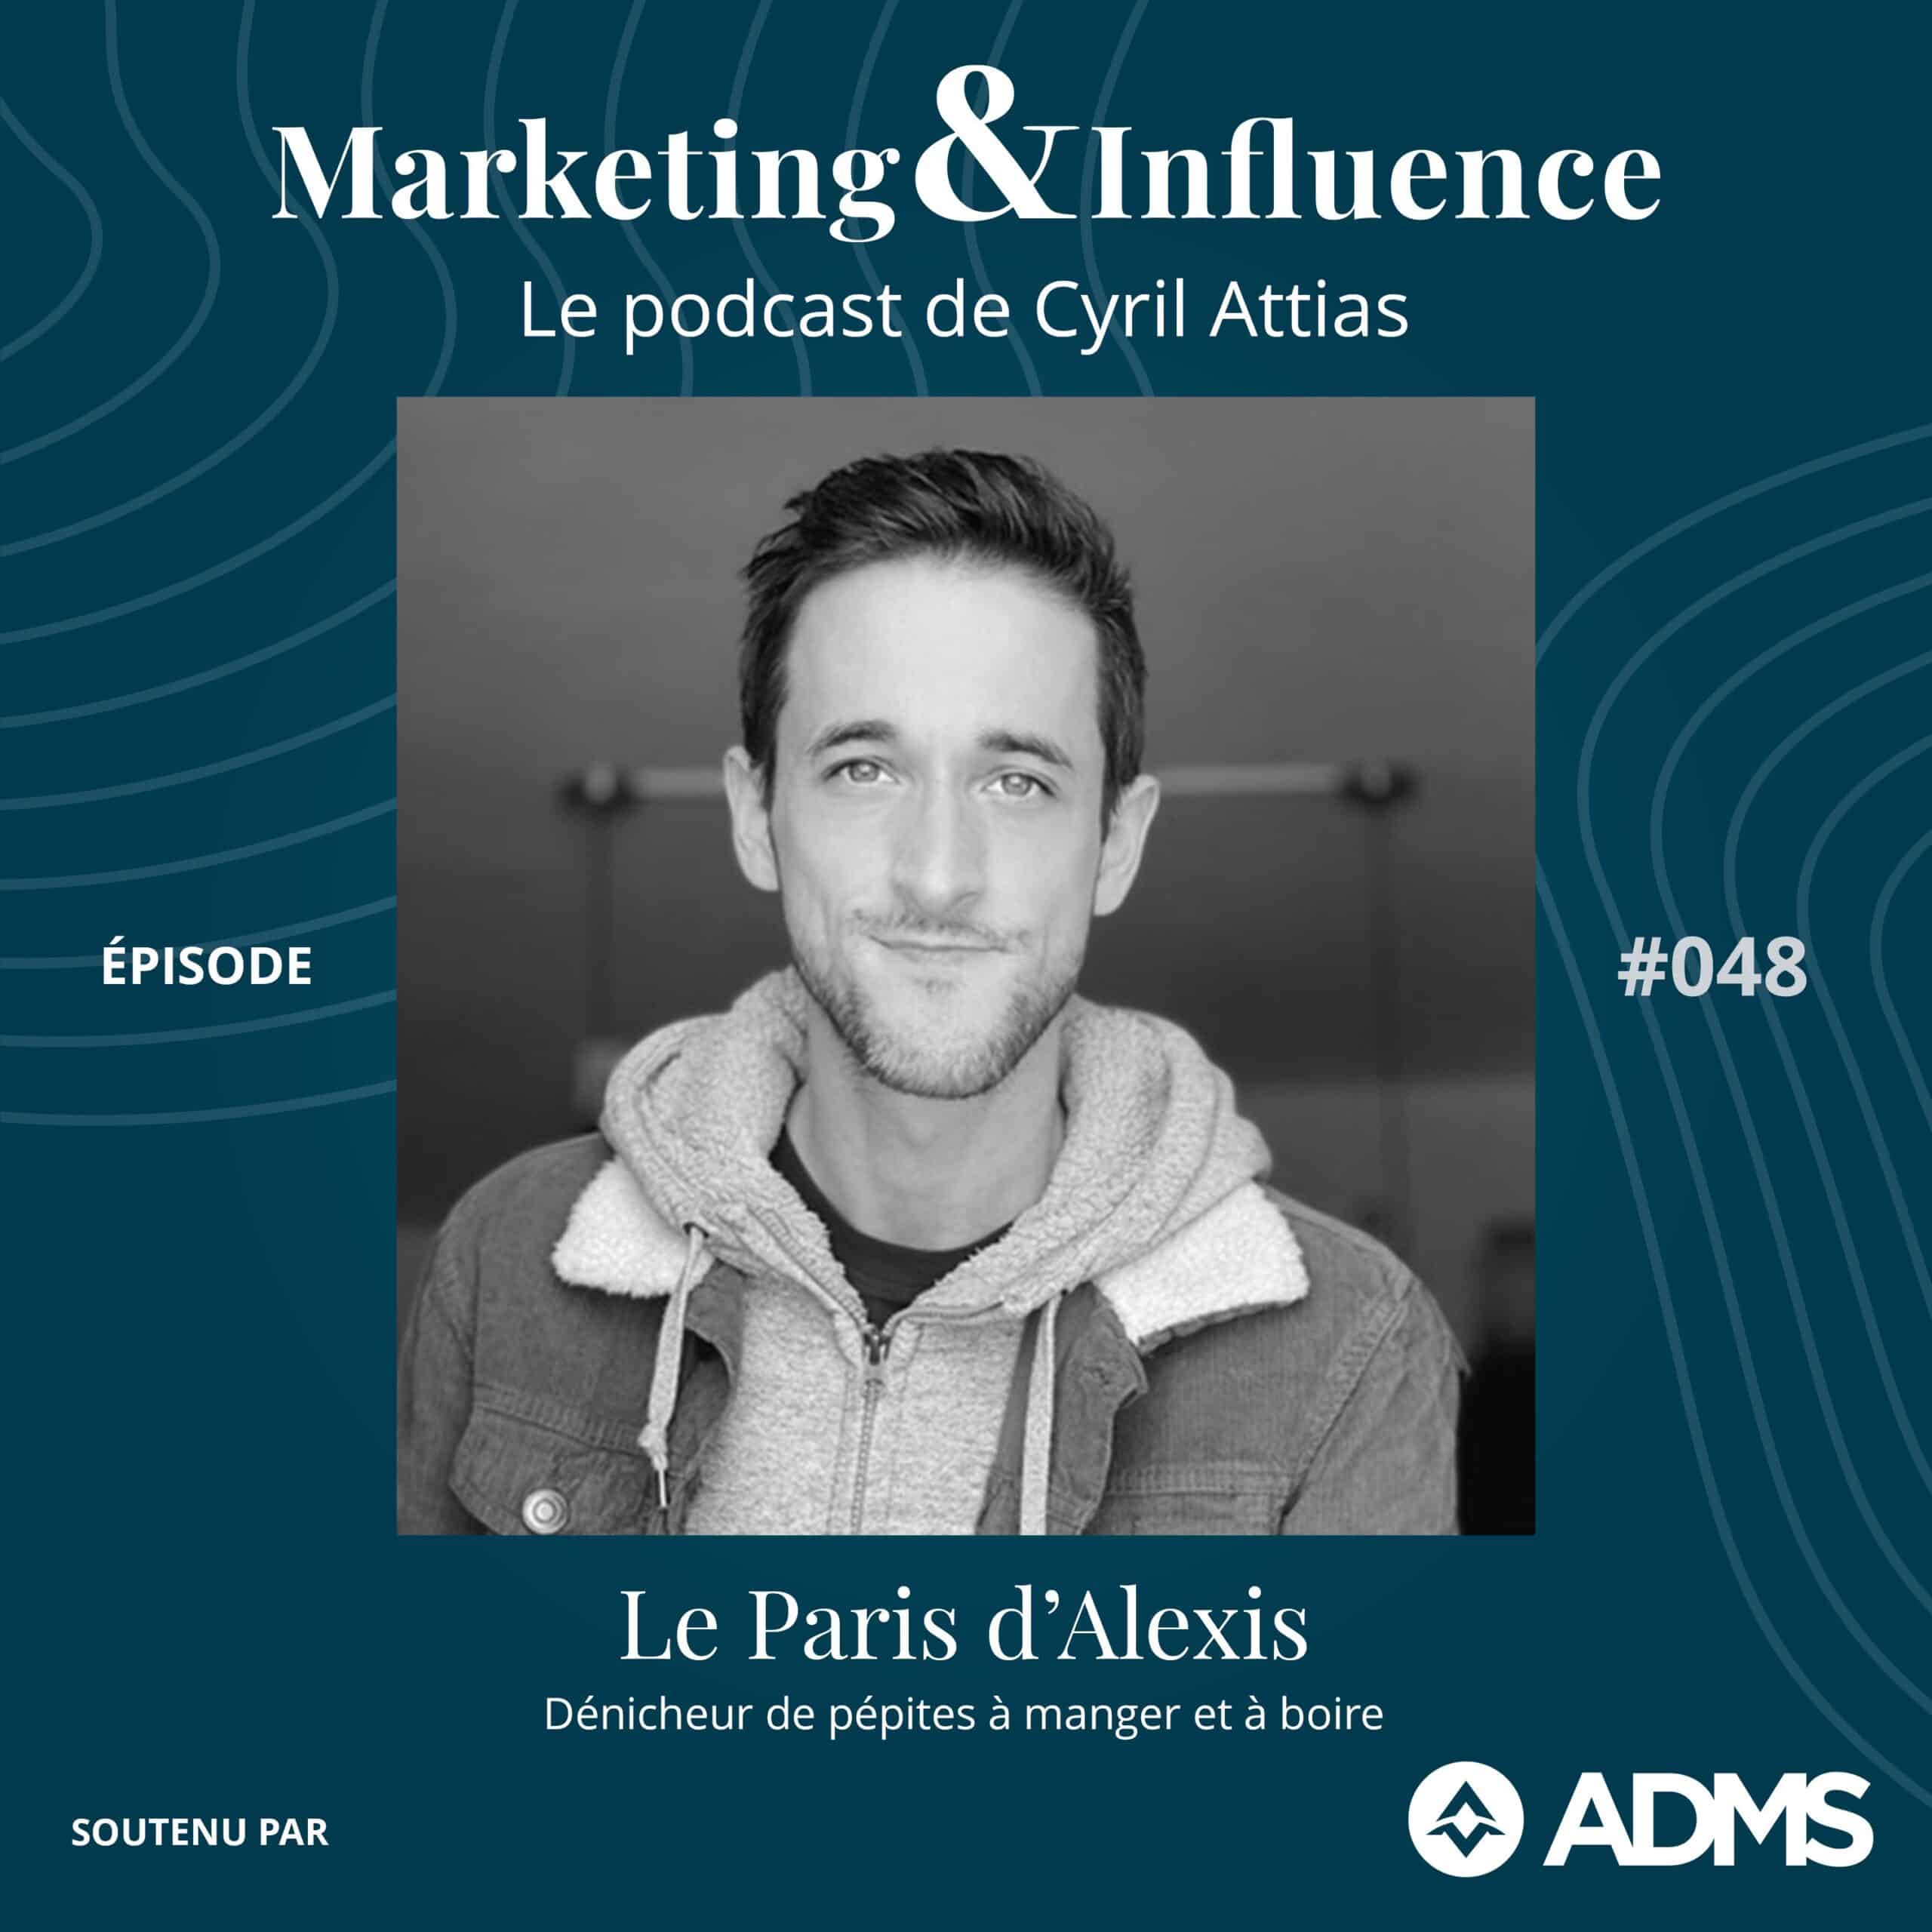 Le-Paris-dAlexis-Podcast-Cyril-Attias-Marketing-Influence